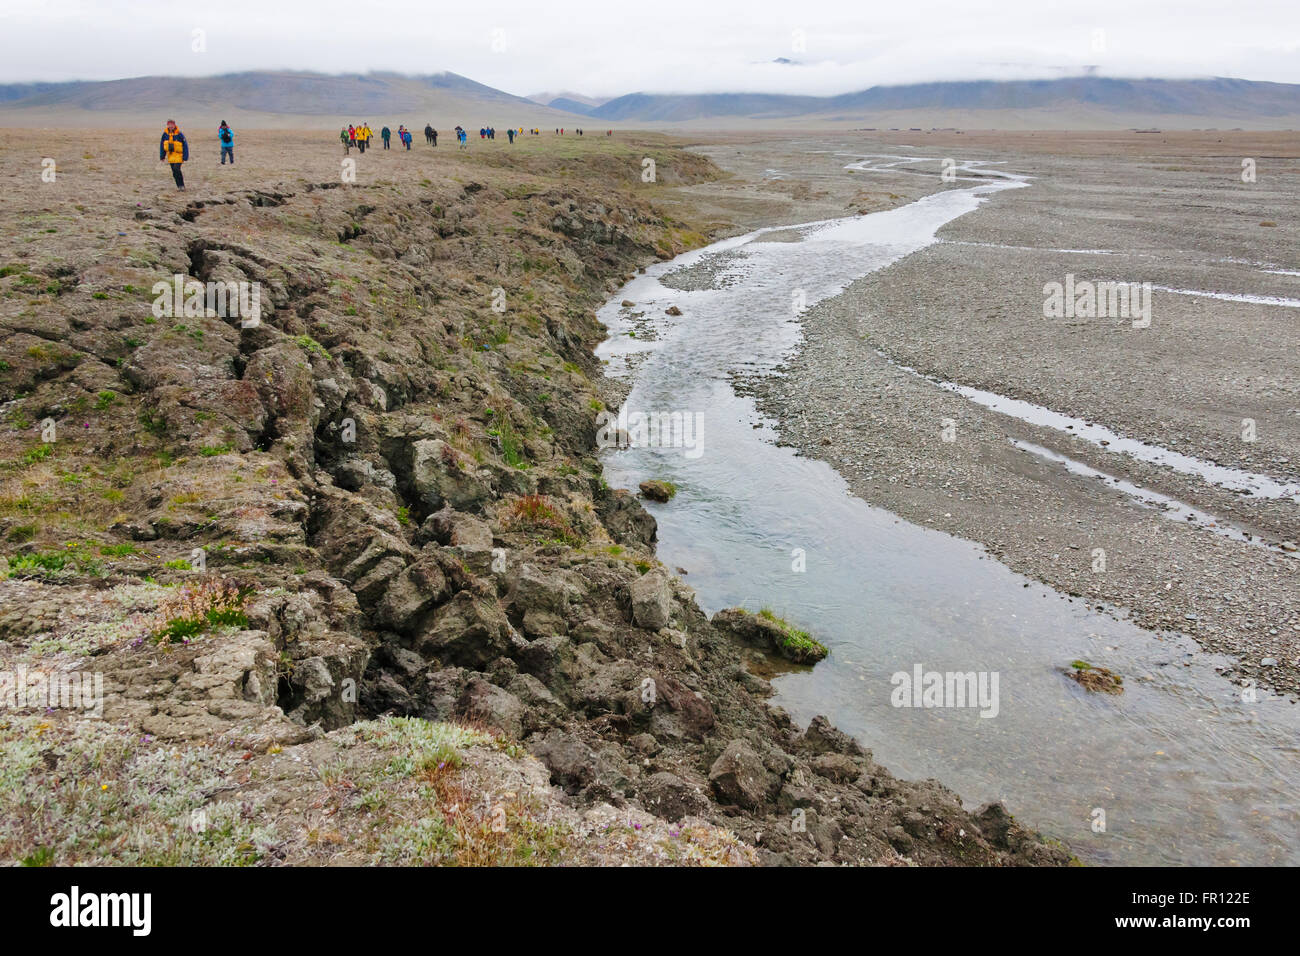 Les touristes en randonnée sur l'île Wrangel, mer de Tchoukotka, en Russie extrême-orient Banque D'Images